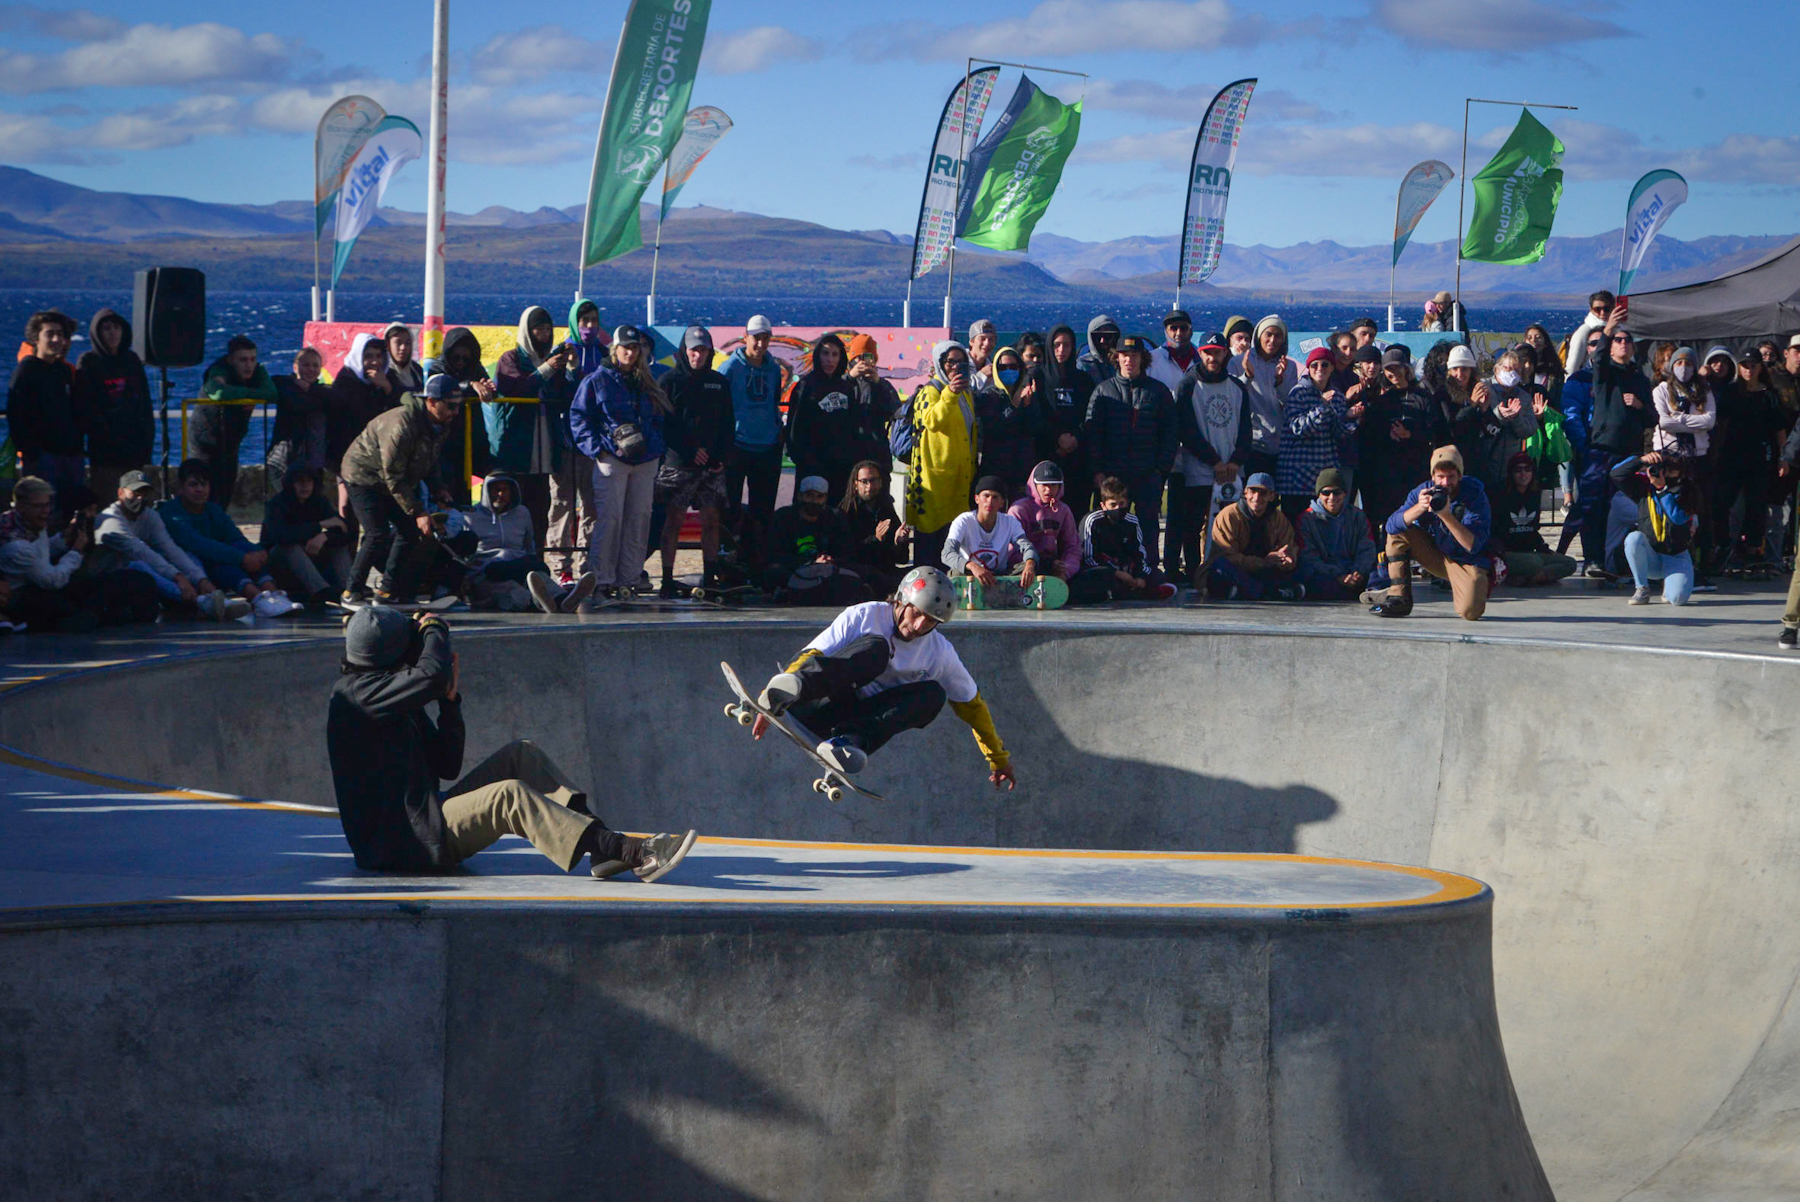 Unos 125 participantes de todo el país se sumaron este fin de semana al skate park de Bariloche. Foto: Marcelo Martínez